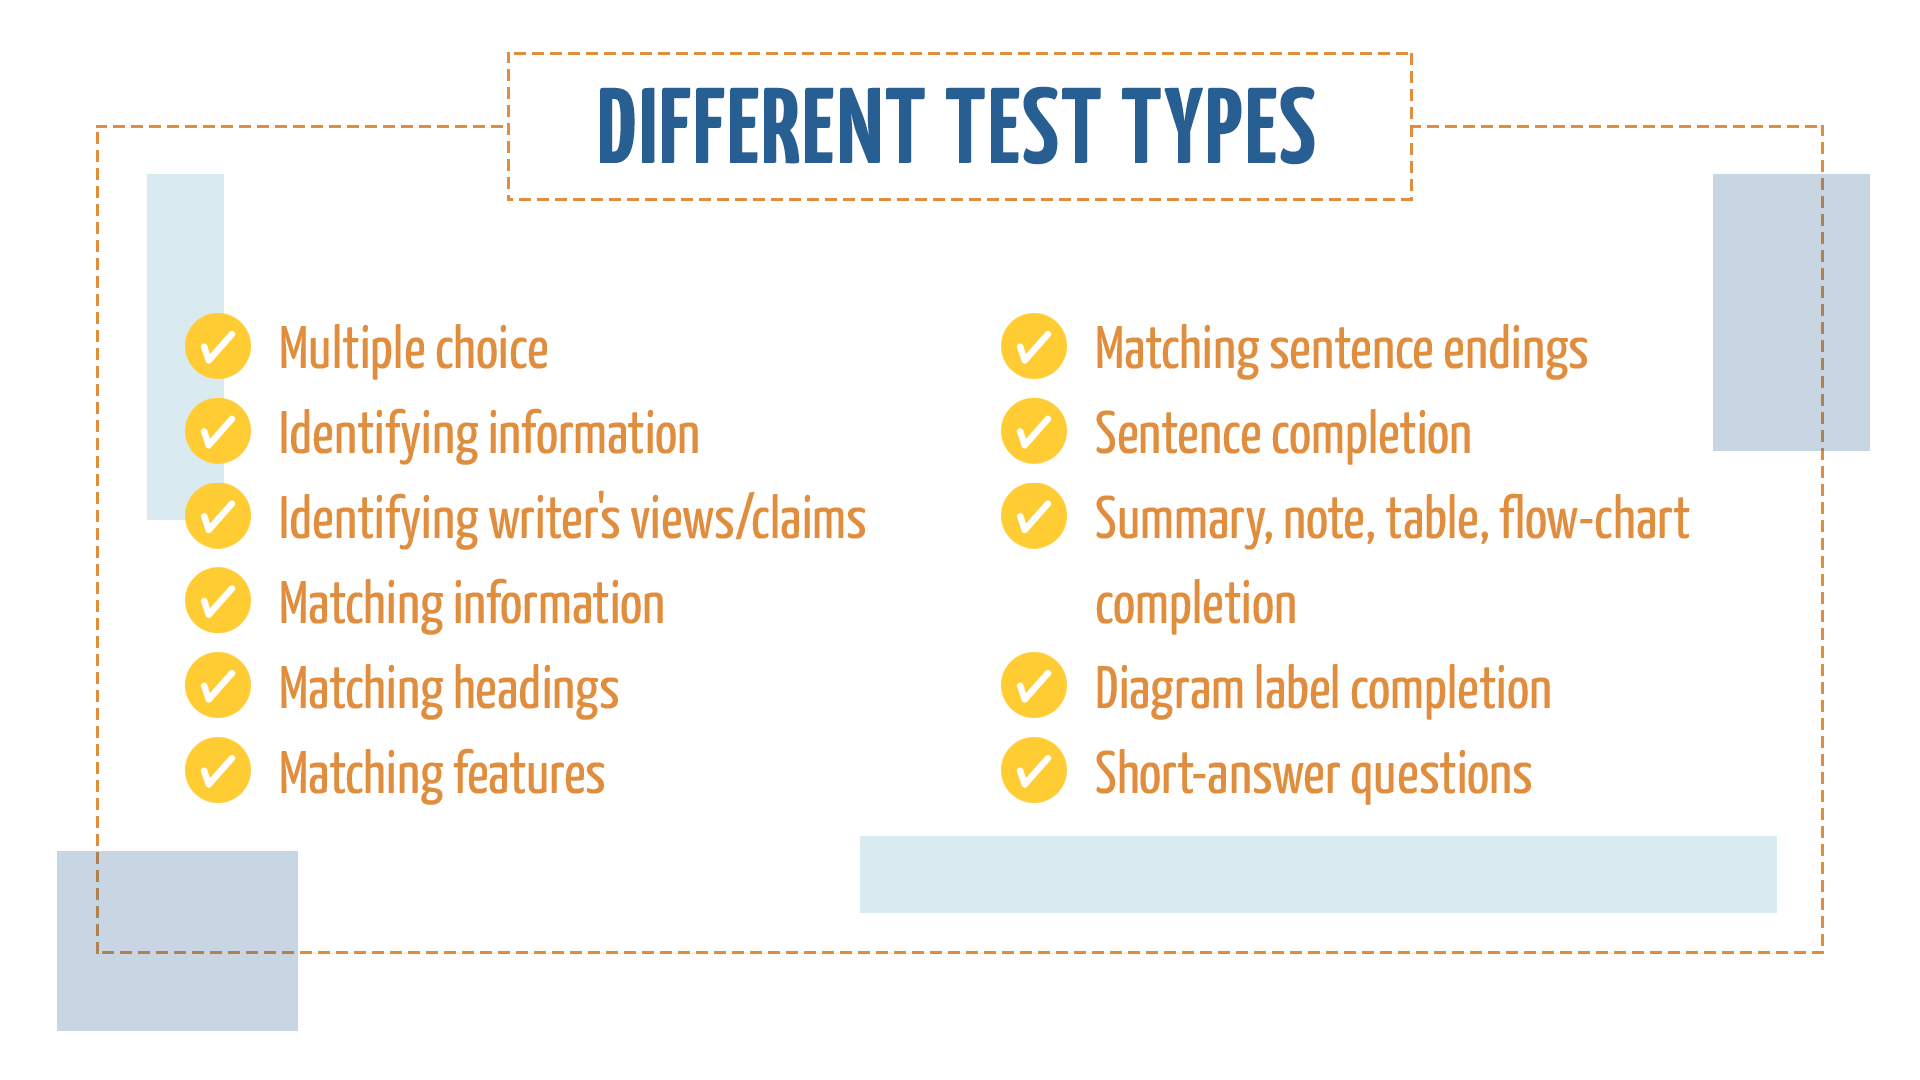 English teachers test. Types of Tests. Test task Types. Types of Tests in English. Types of Tests in English language teaching.